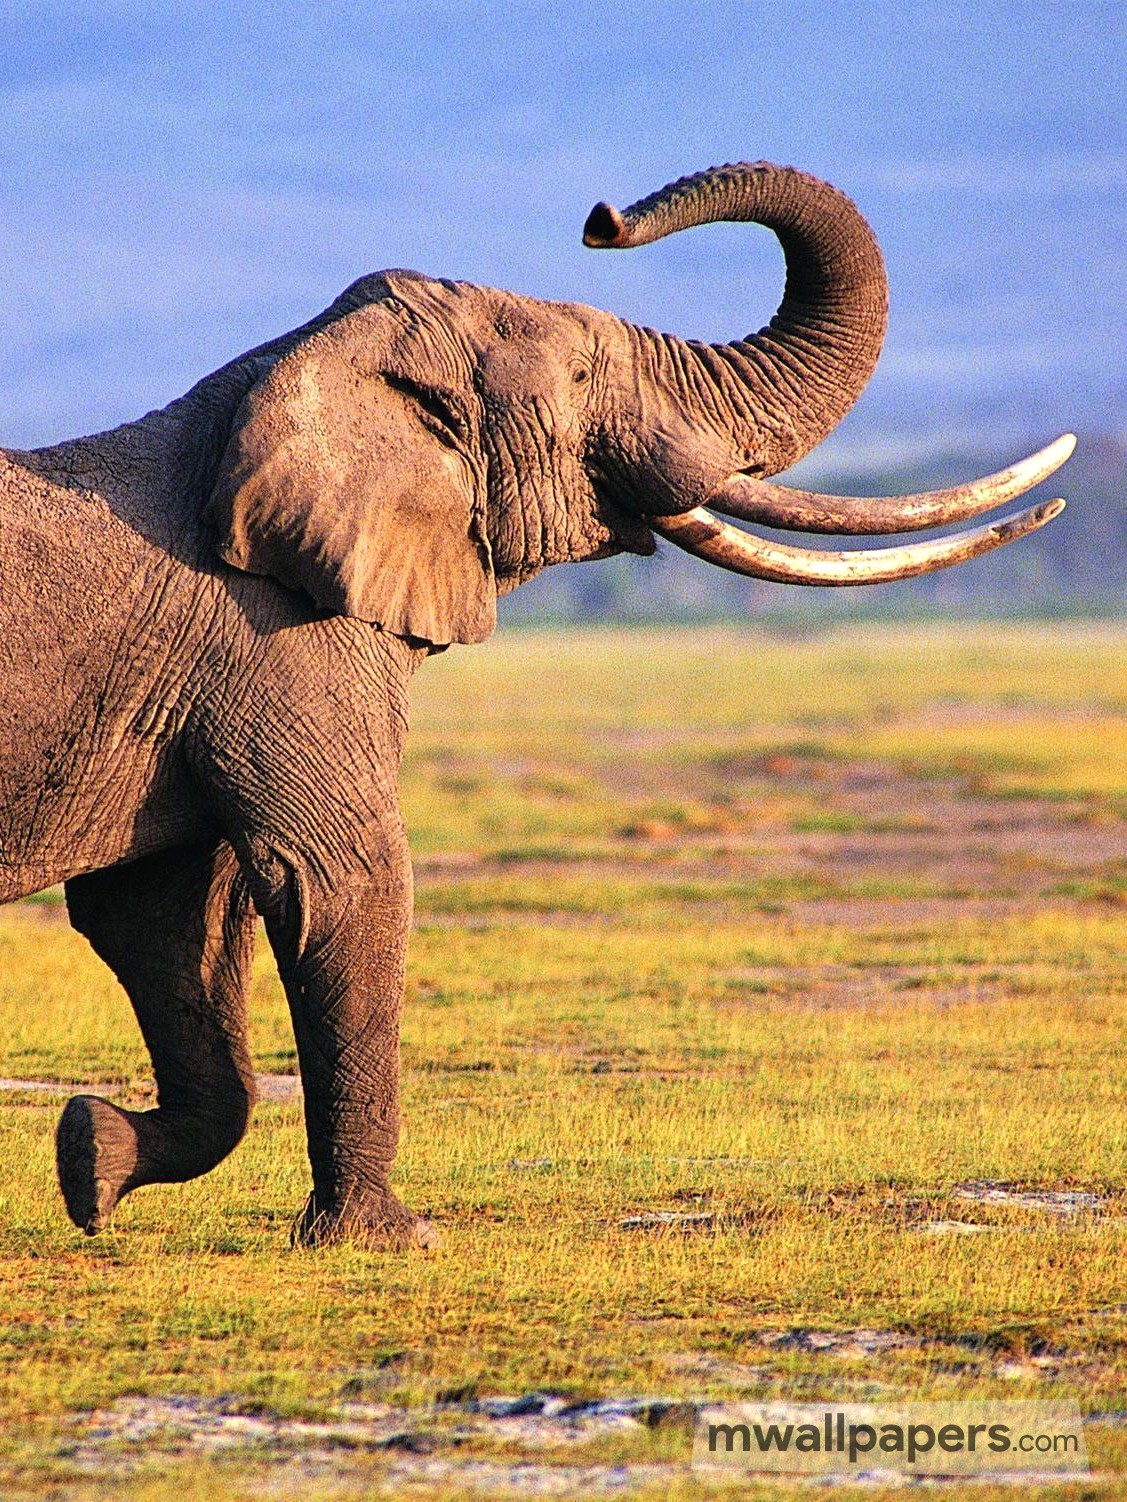 elefant iphone wallpaper,elefant,elefanten und mammuts,landtier,tierwelt,indischer elefant